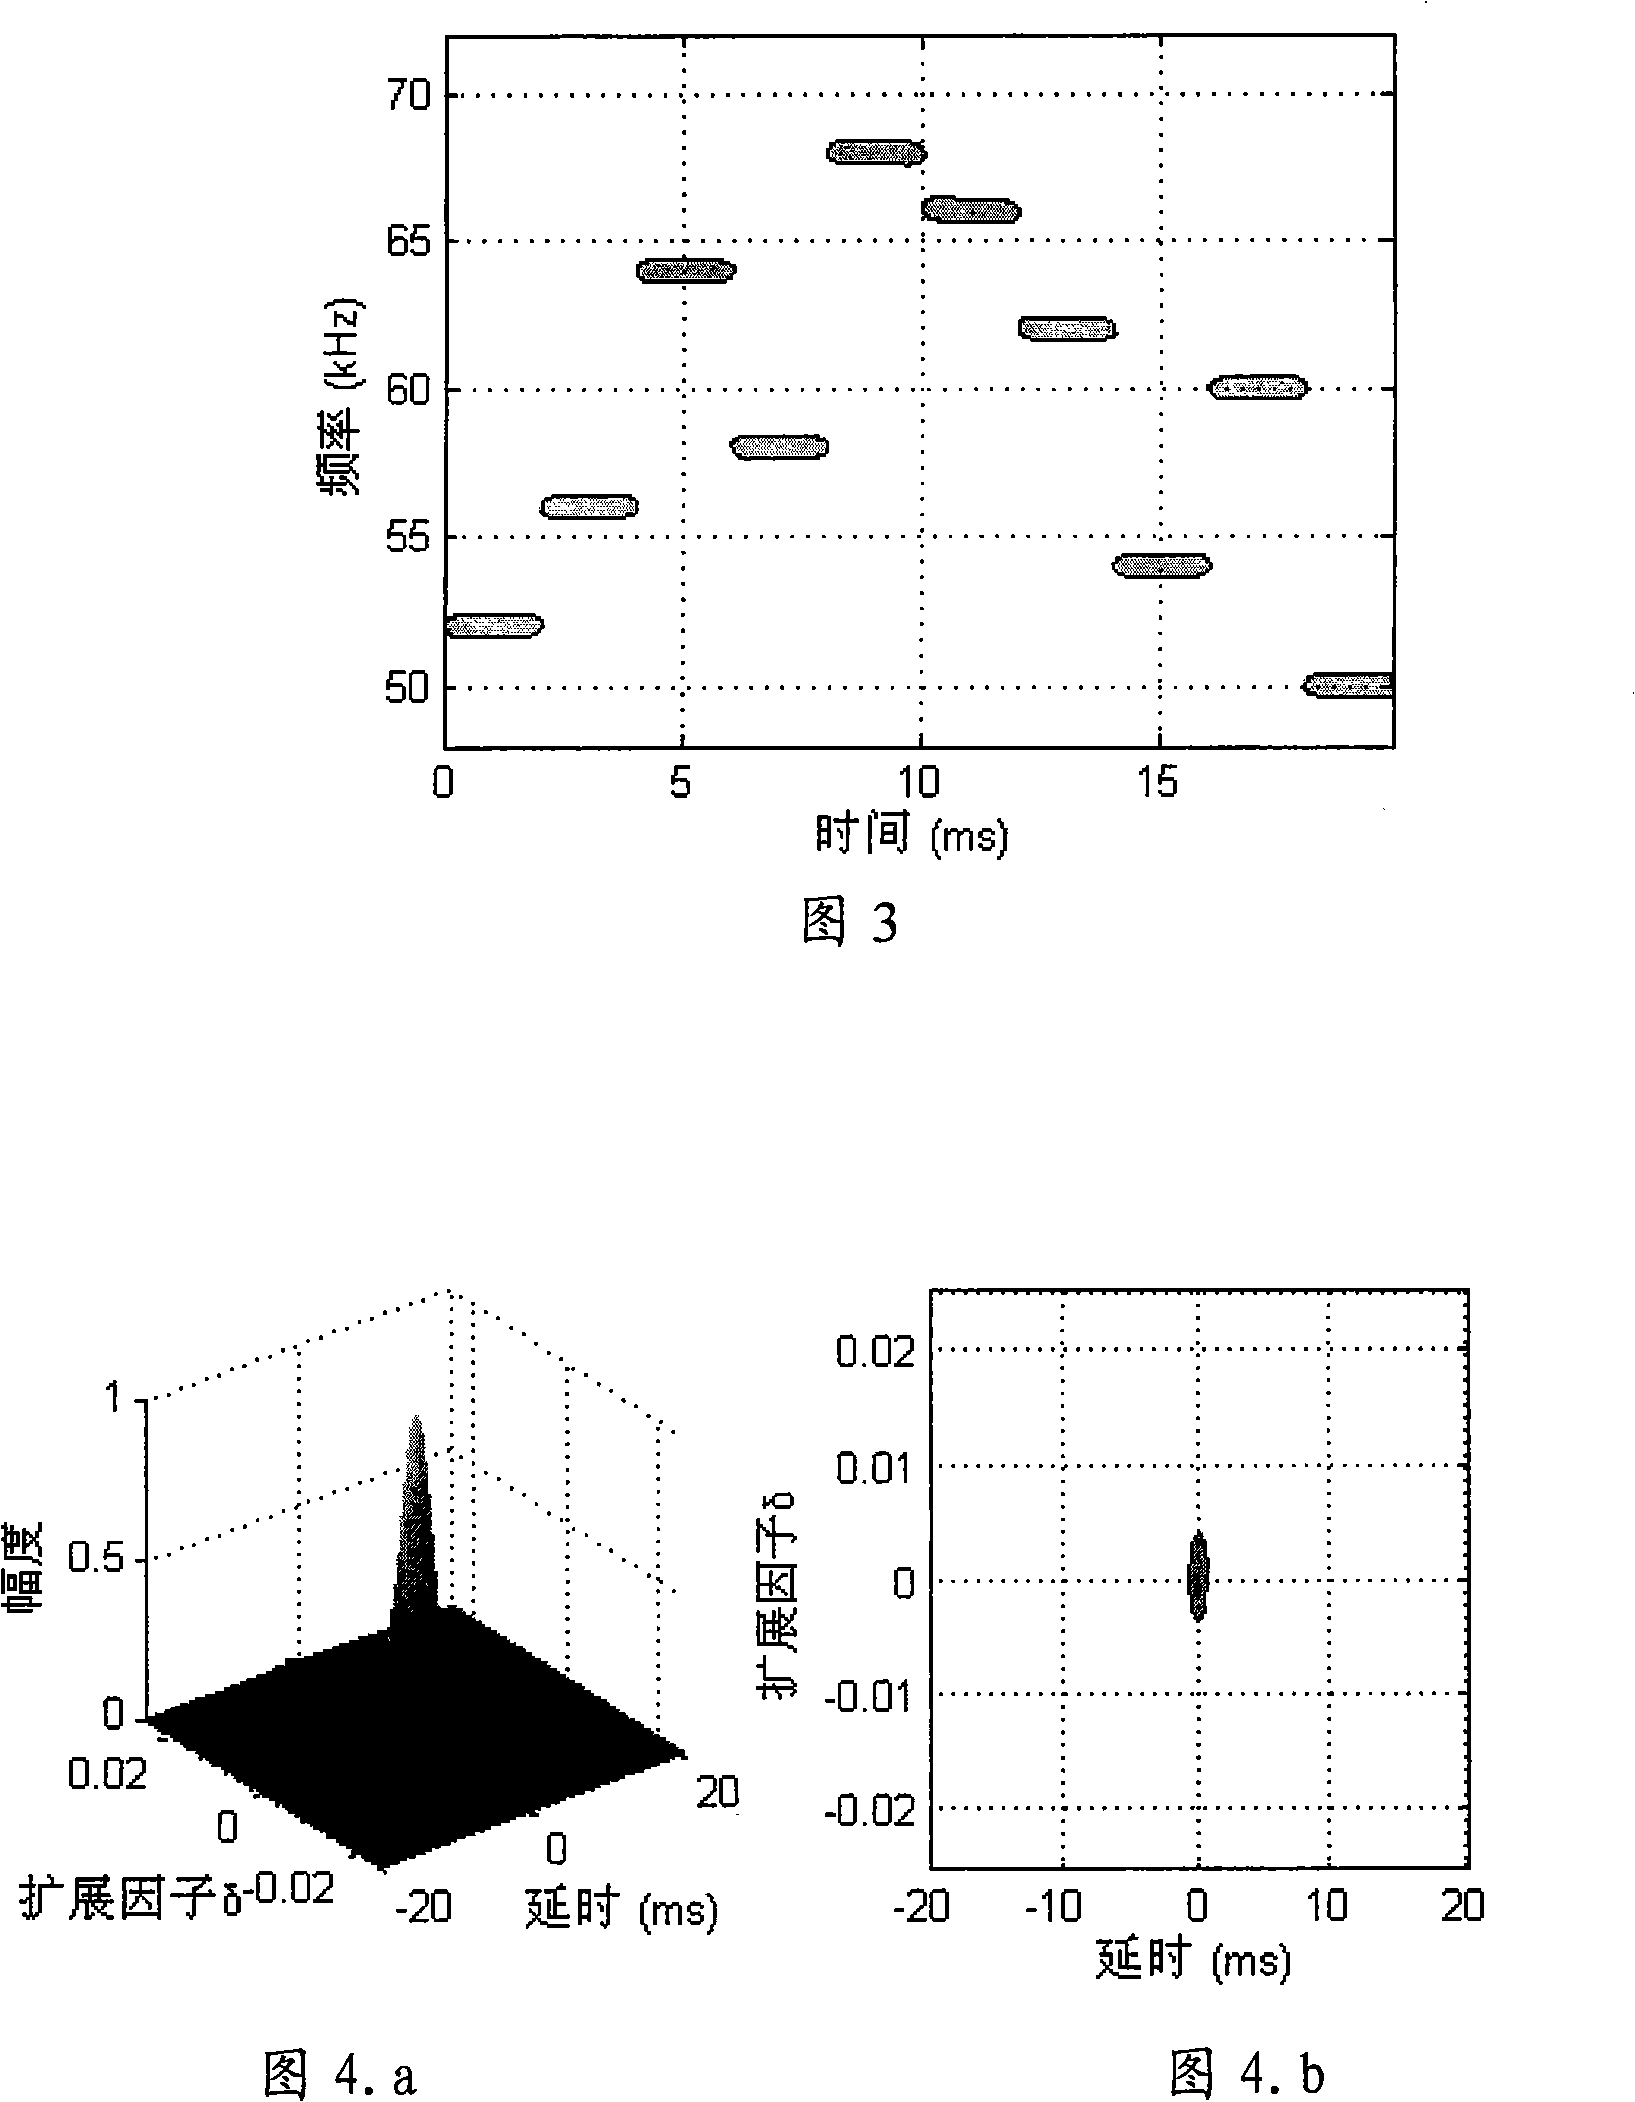 Multi-address detection method of Doppler width